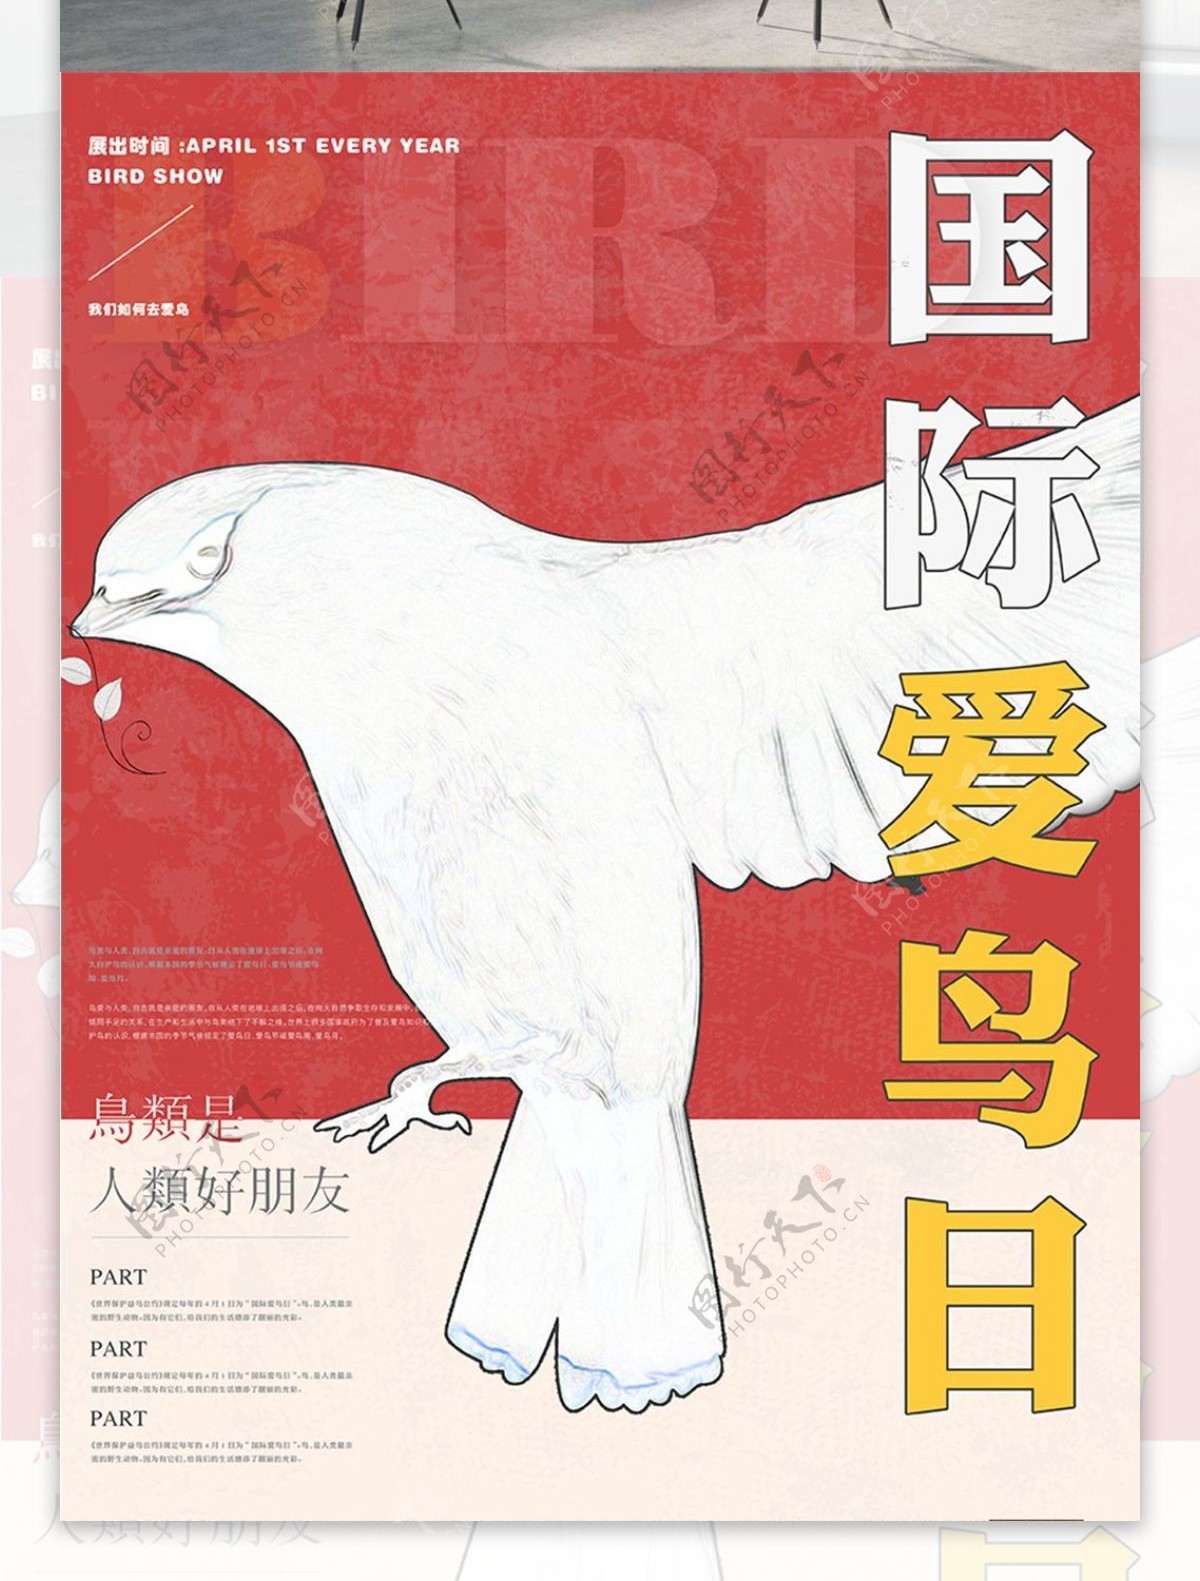 国际爱鸟日公益海报